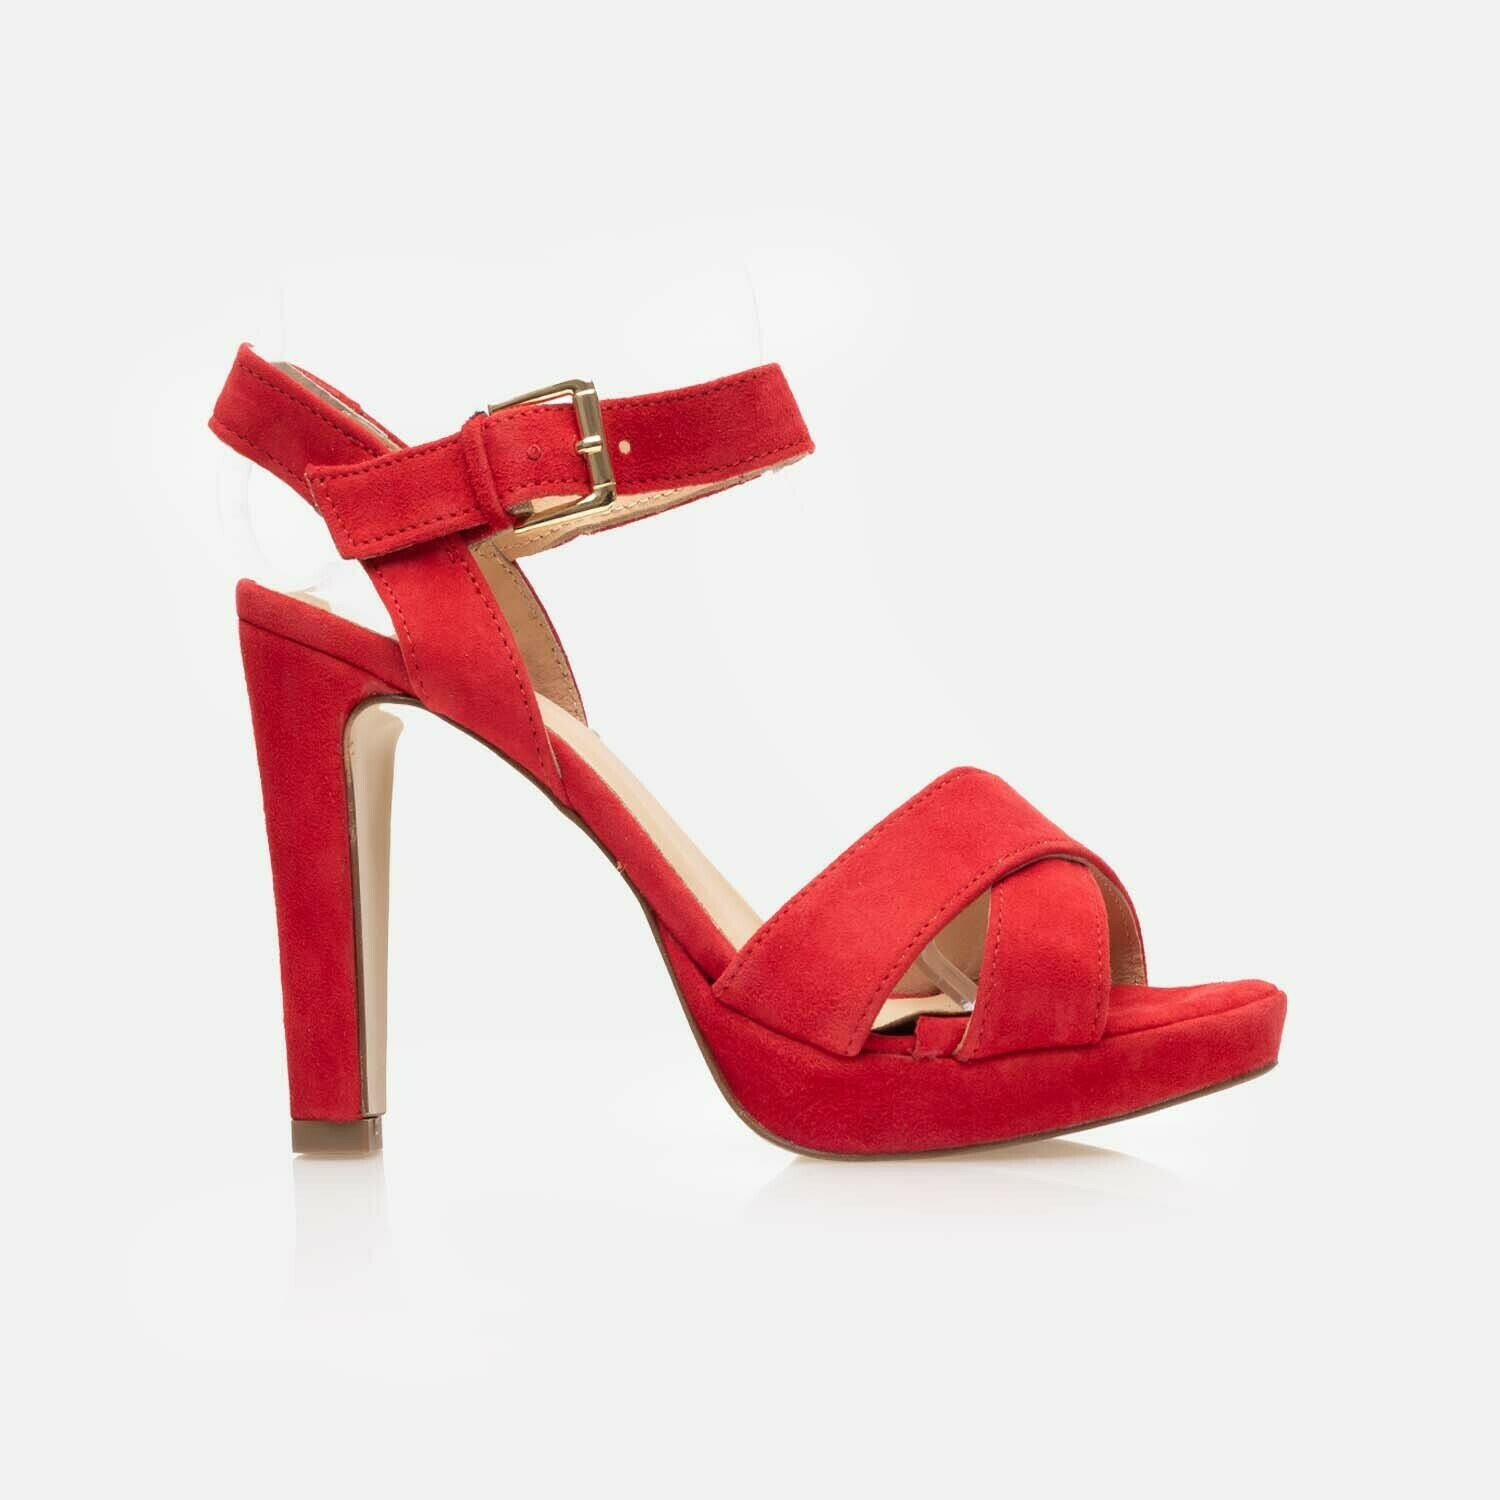 Sandale elegante damă cu toc din piele naturală - 210 Roşu Velur